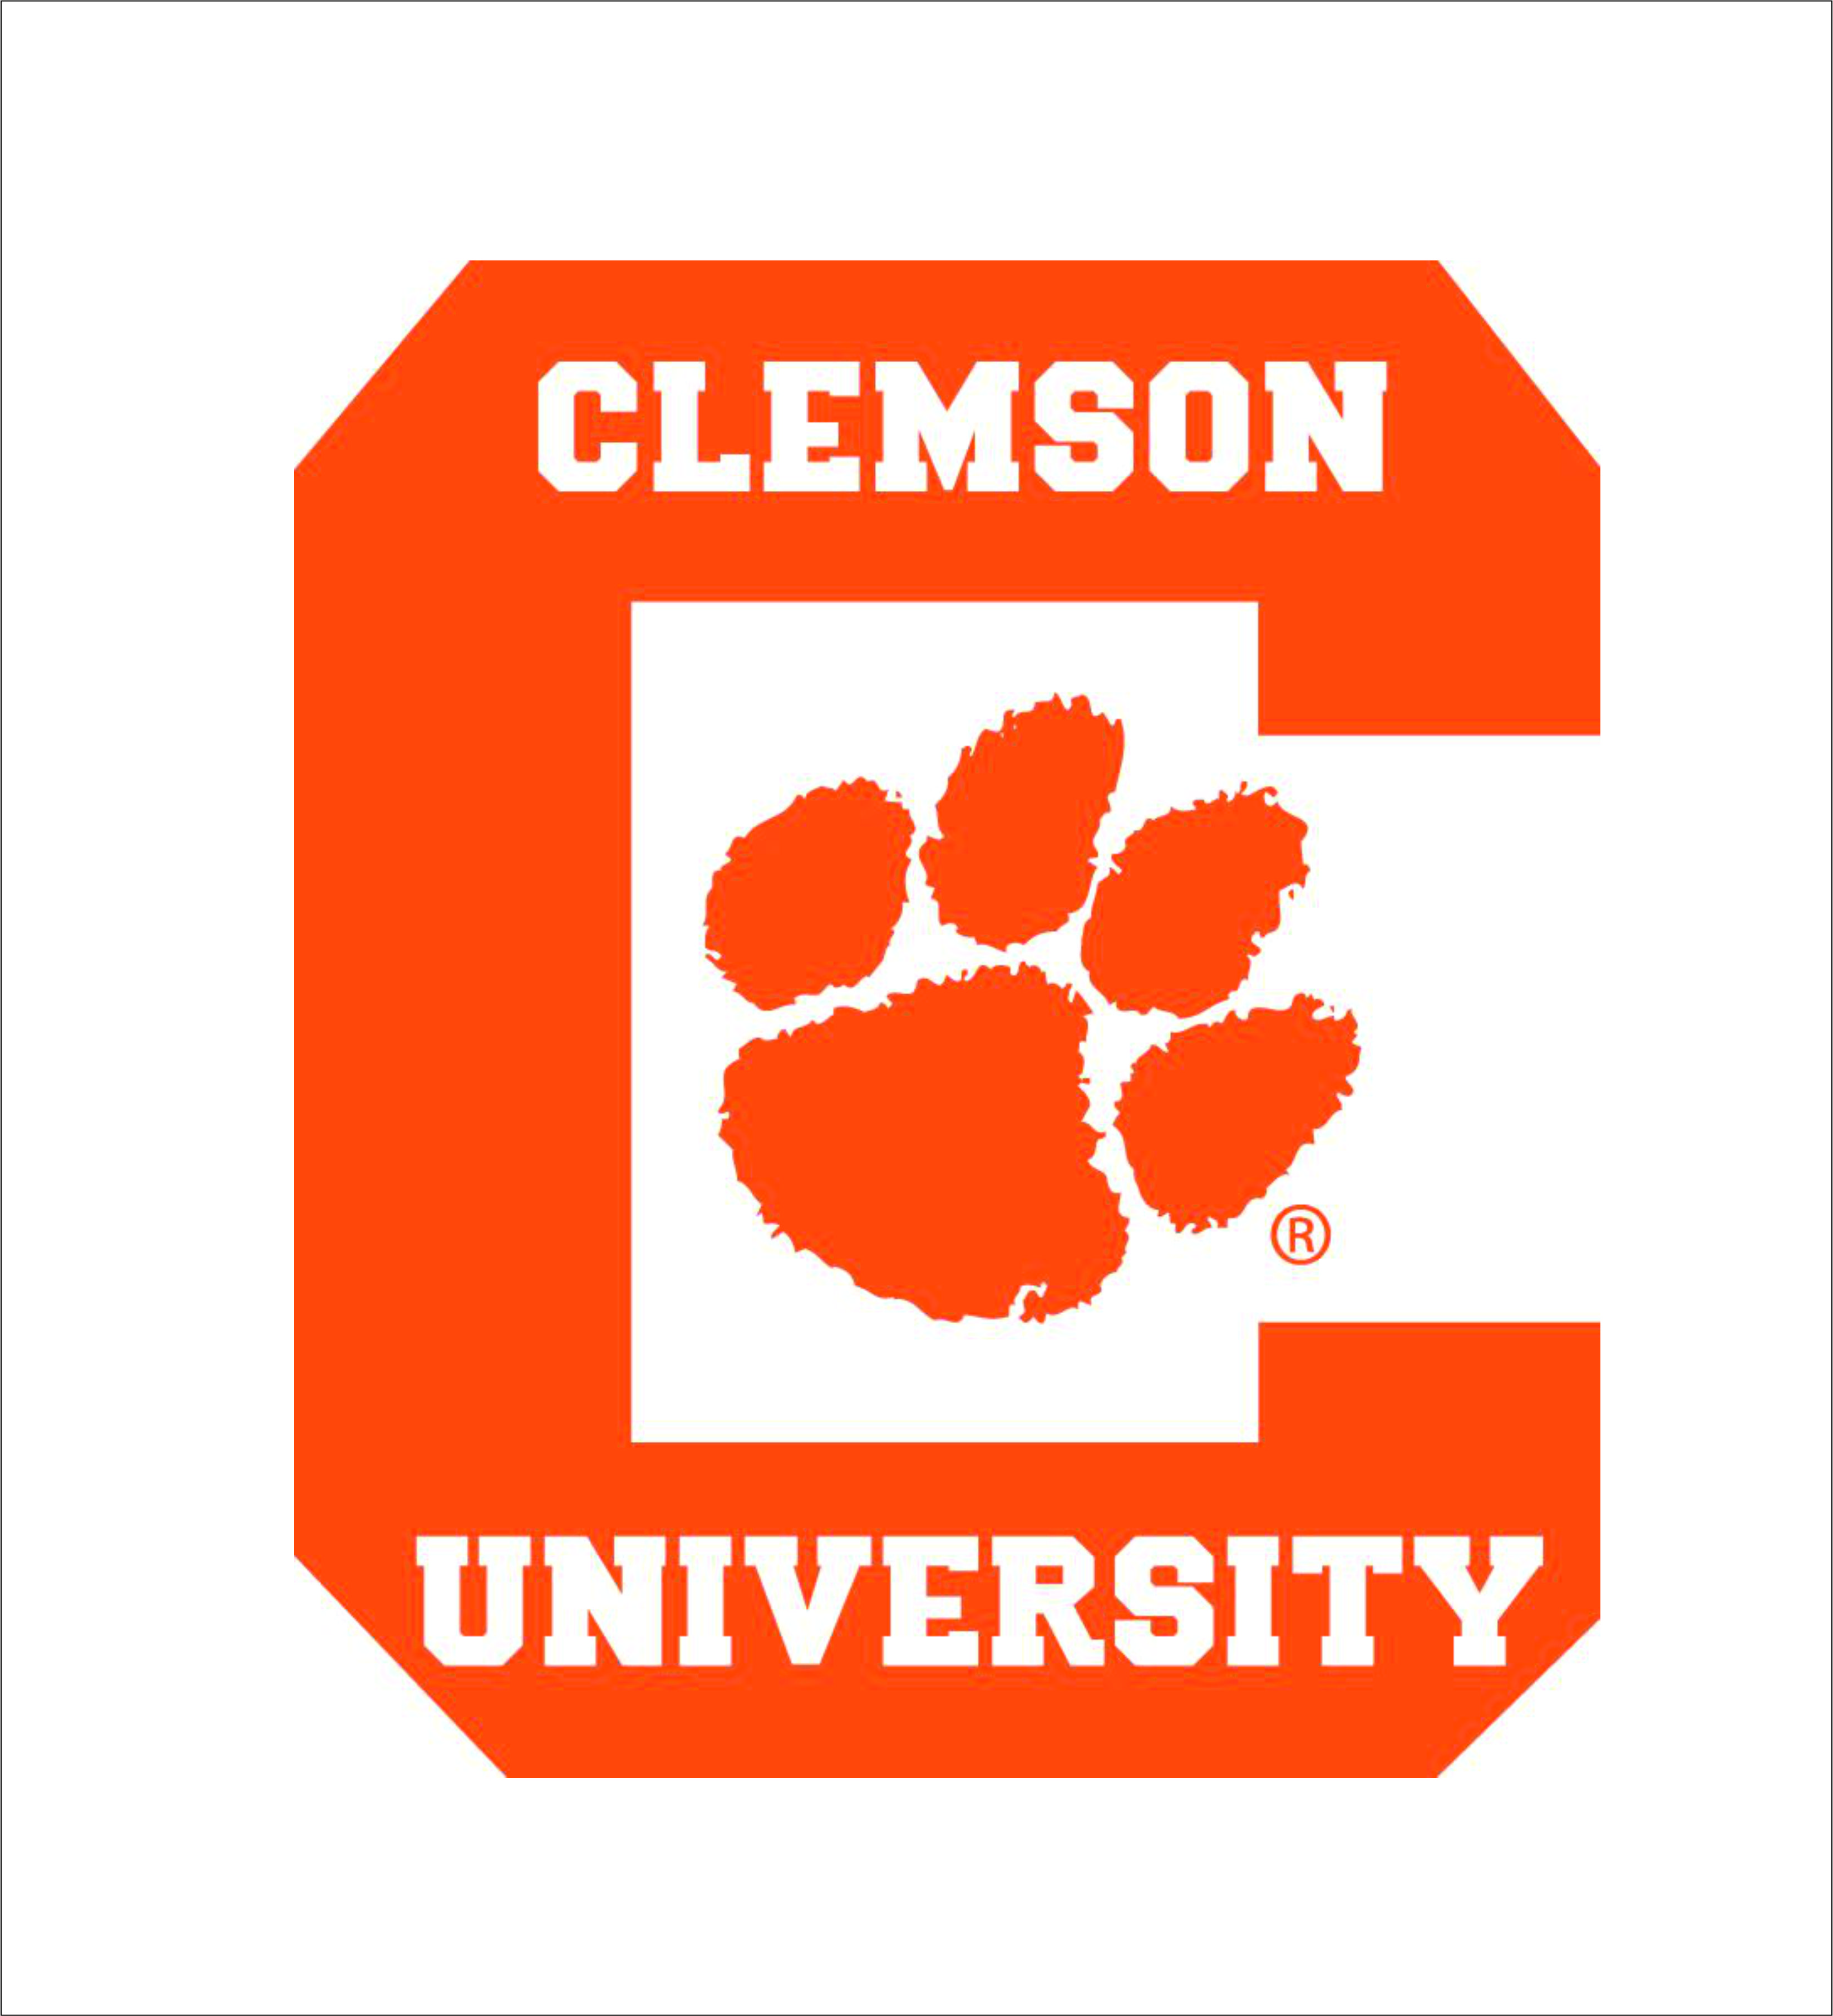 Download Clemson Tigers logo | SVGprinted